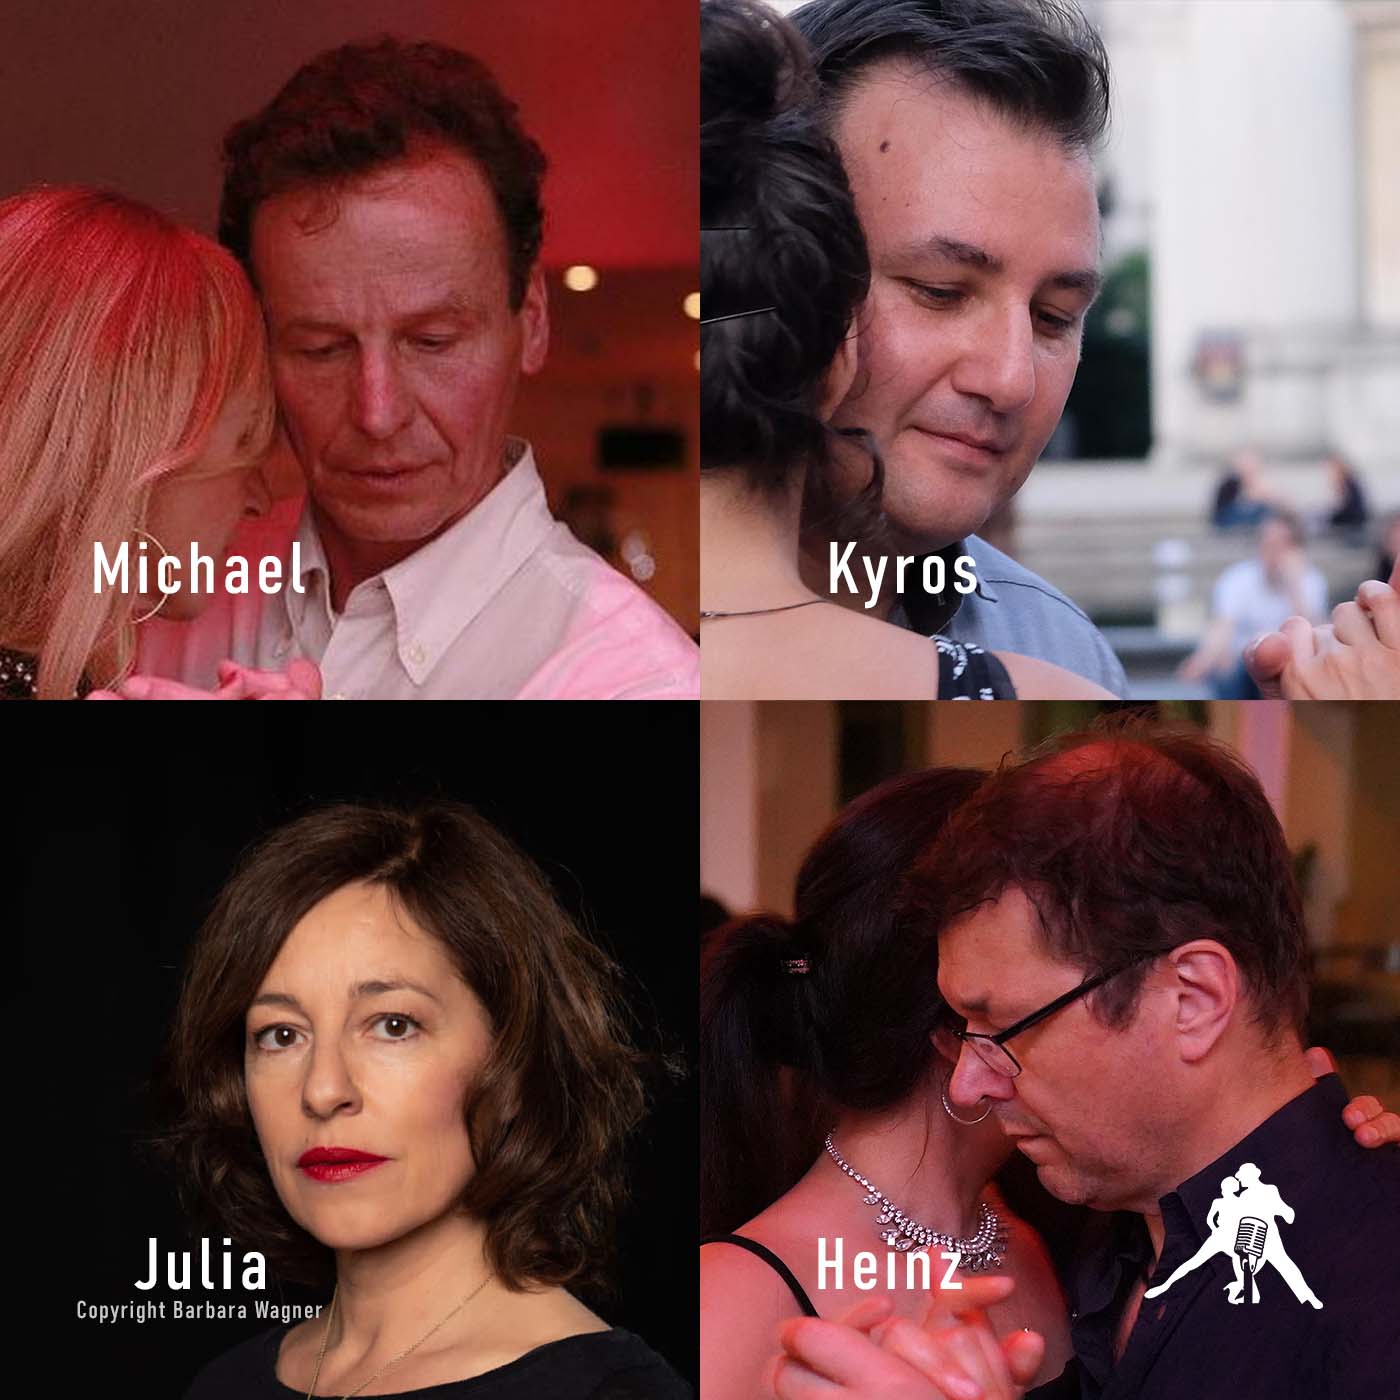 Michael, Kyros, Heinz, wie seht Ihr die Leader-Rolle im Tango Argentino?